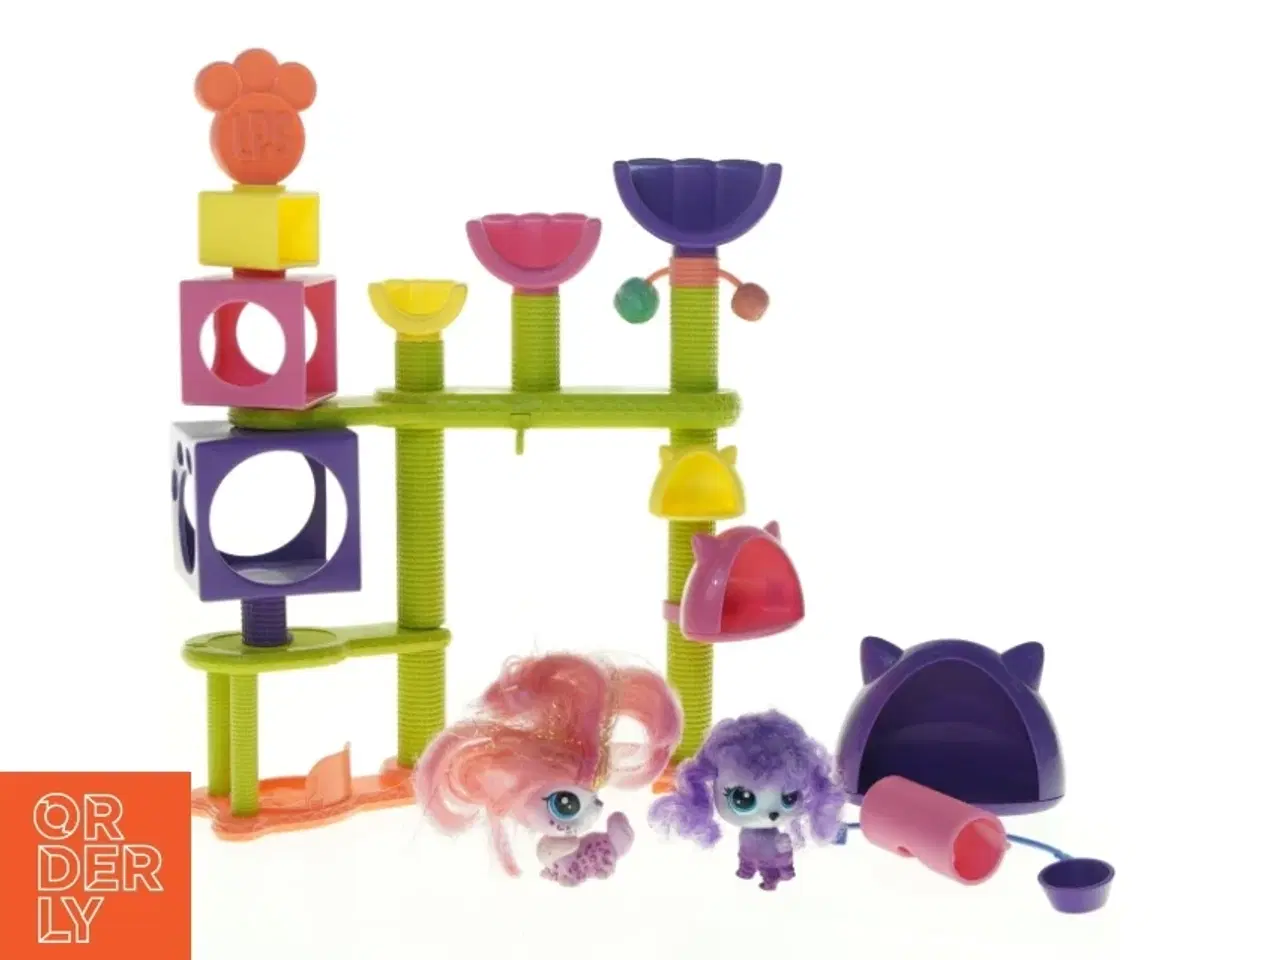 Billede 1 - Littlest Pet Shop legeplads sæt fra Hasbro (str. 20 x 5 x 28)